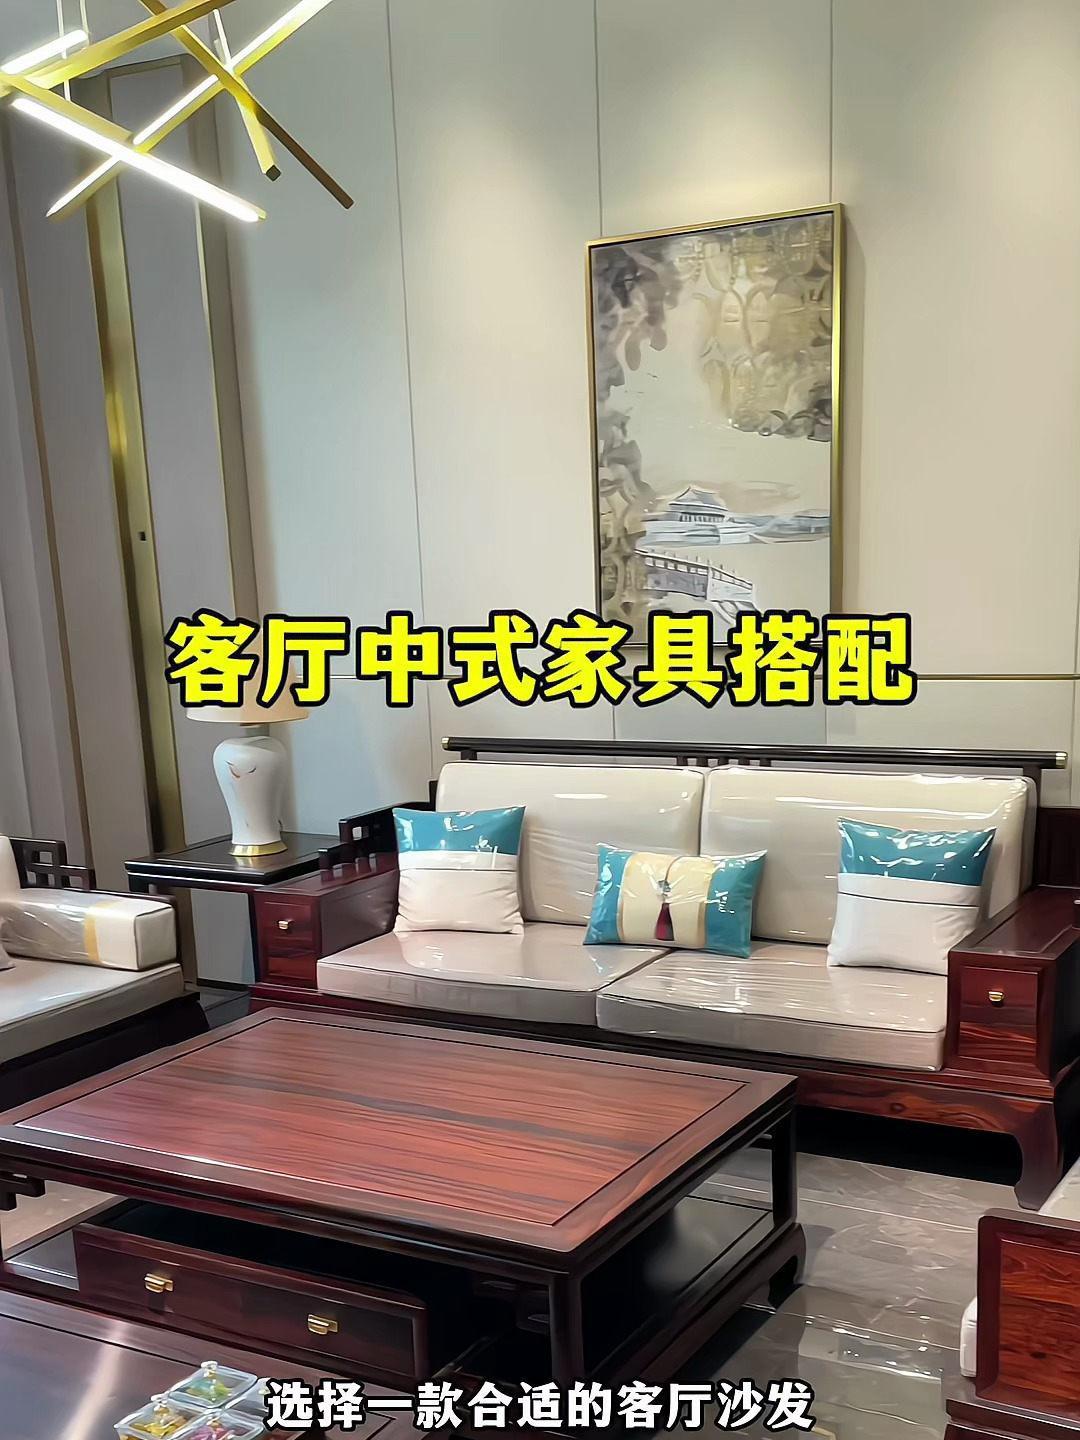 柔软舒适,美观时尚,新中式红木沙发让你的客厅更加温馨!